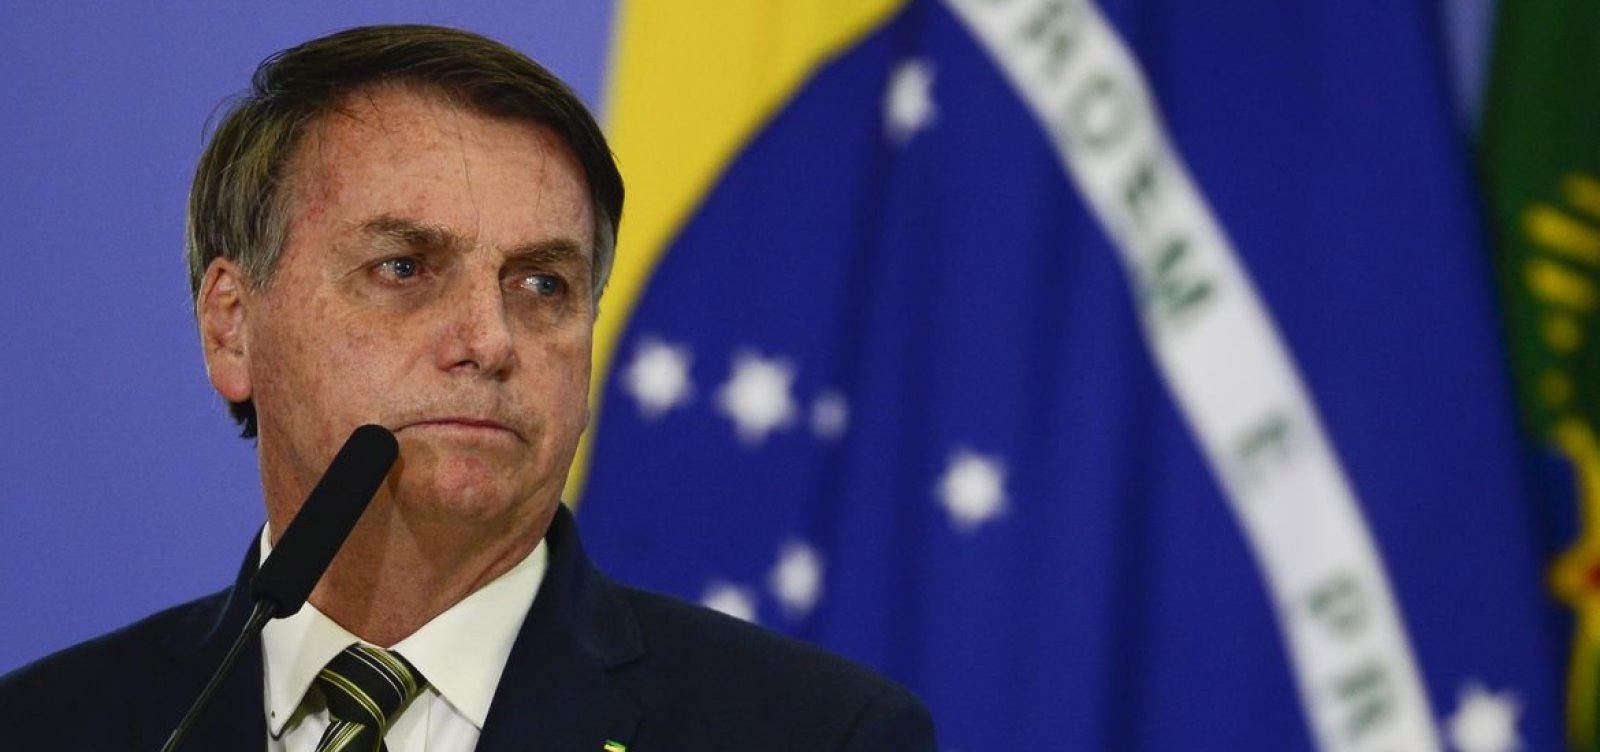 Após fala de Fachin, Bolsonaro baixa tom e diz que "ninguém quer atacar urnas"